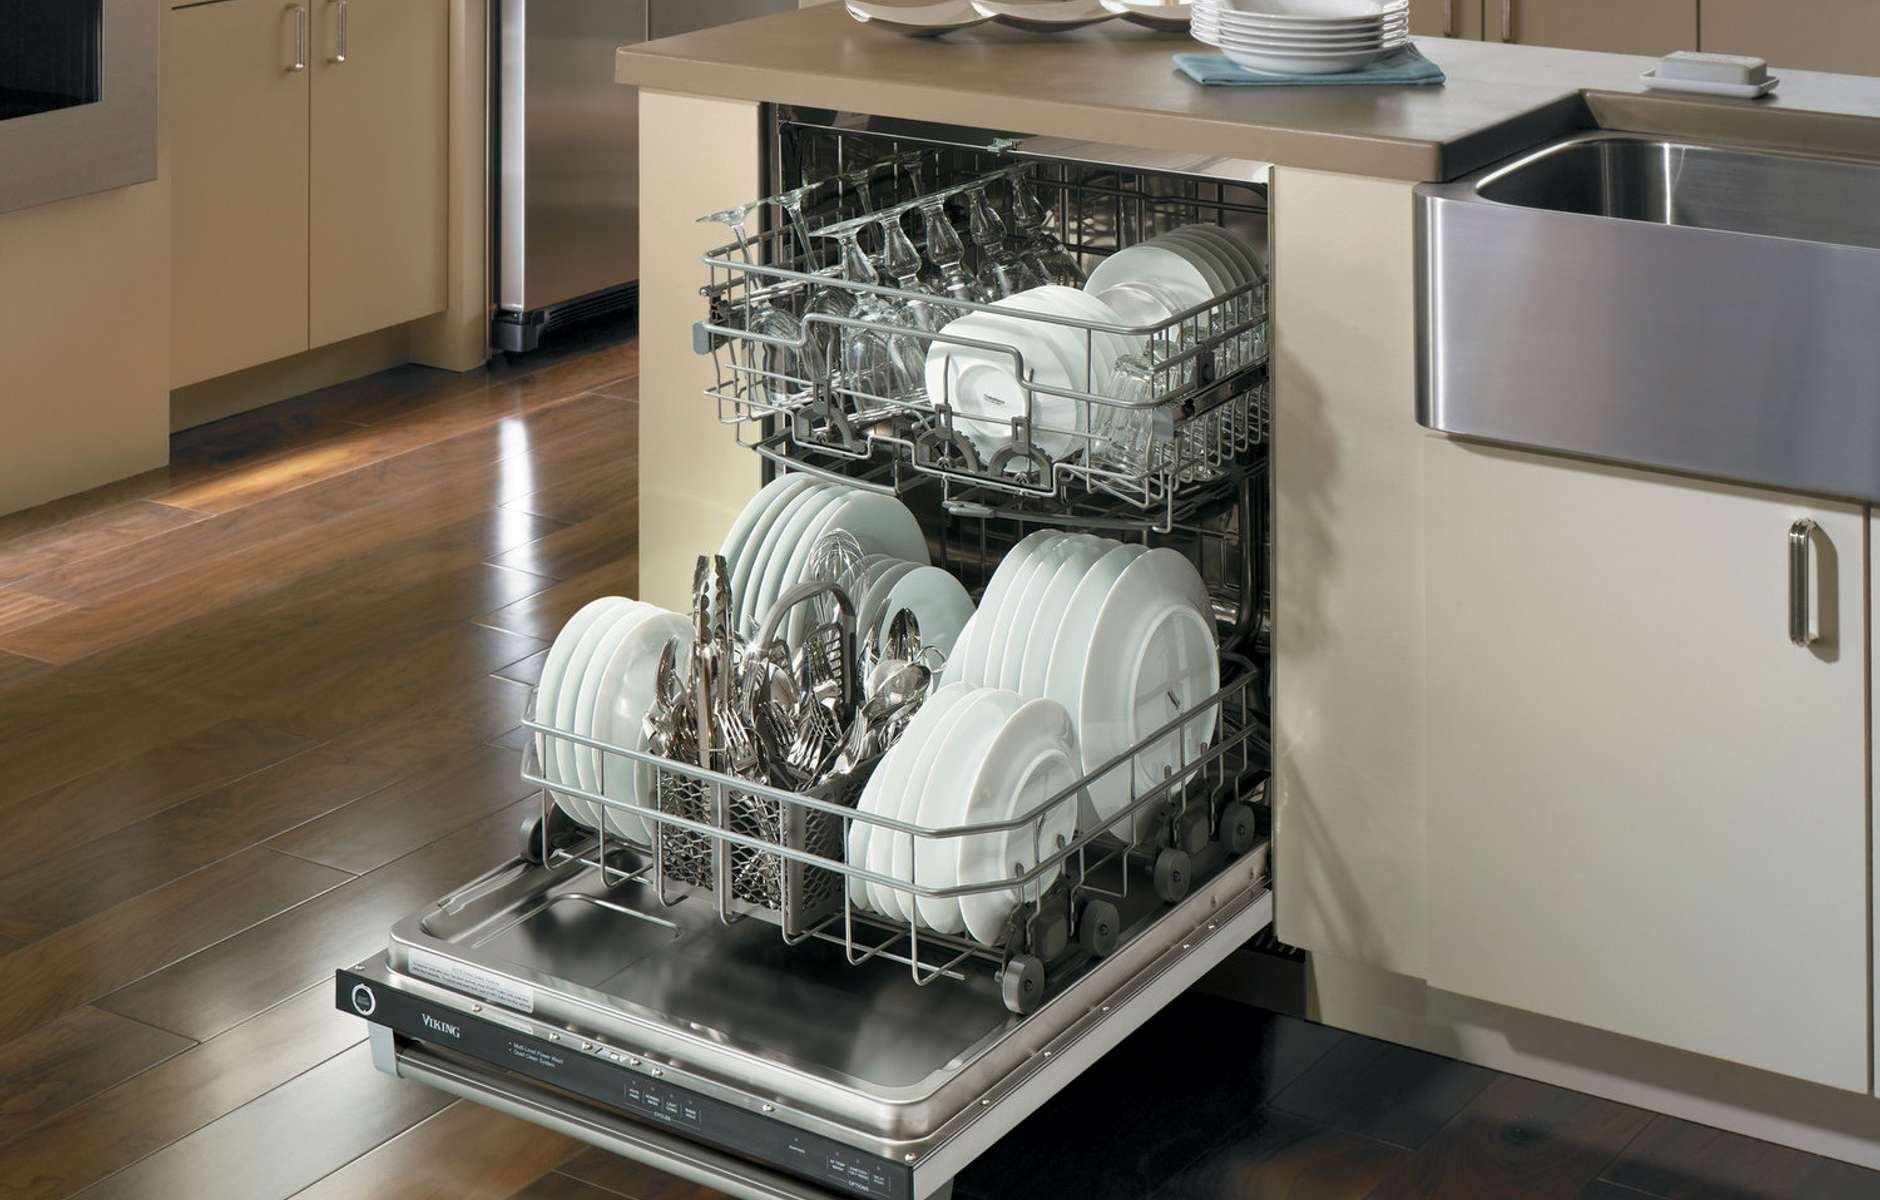 Какие посудомоечные машины хорошие по качеству. Miele g 5890 SCVI. Посудомойка Сименс 45 см встраиваемая. Посудомоечная машина Хаер 60. Посудомойка Bosch spv45dx20r.